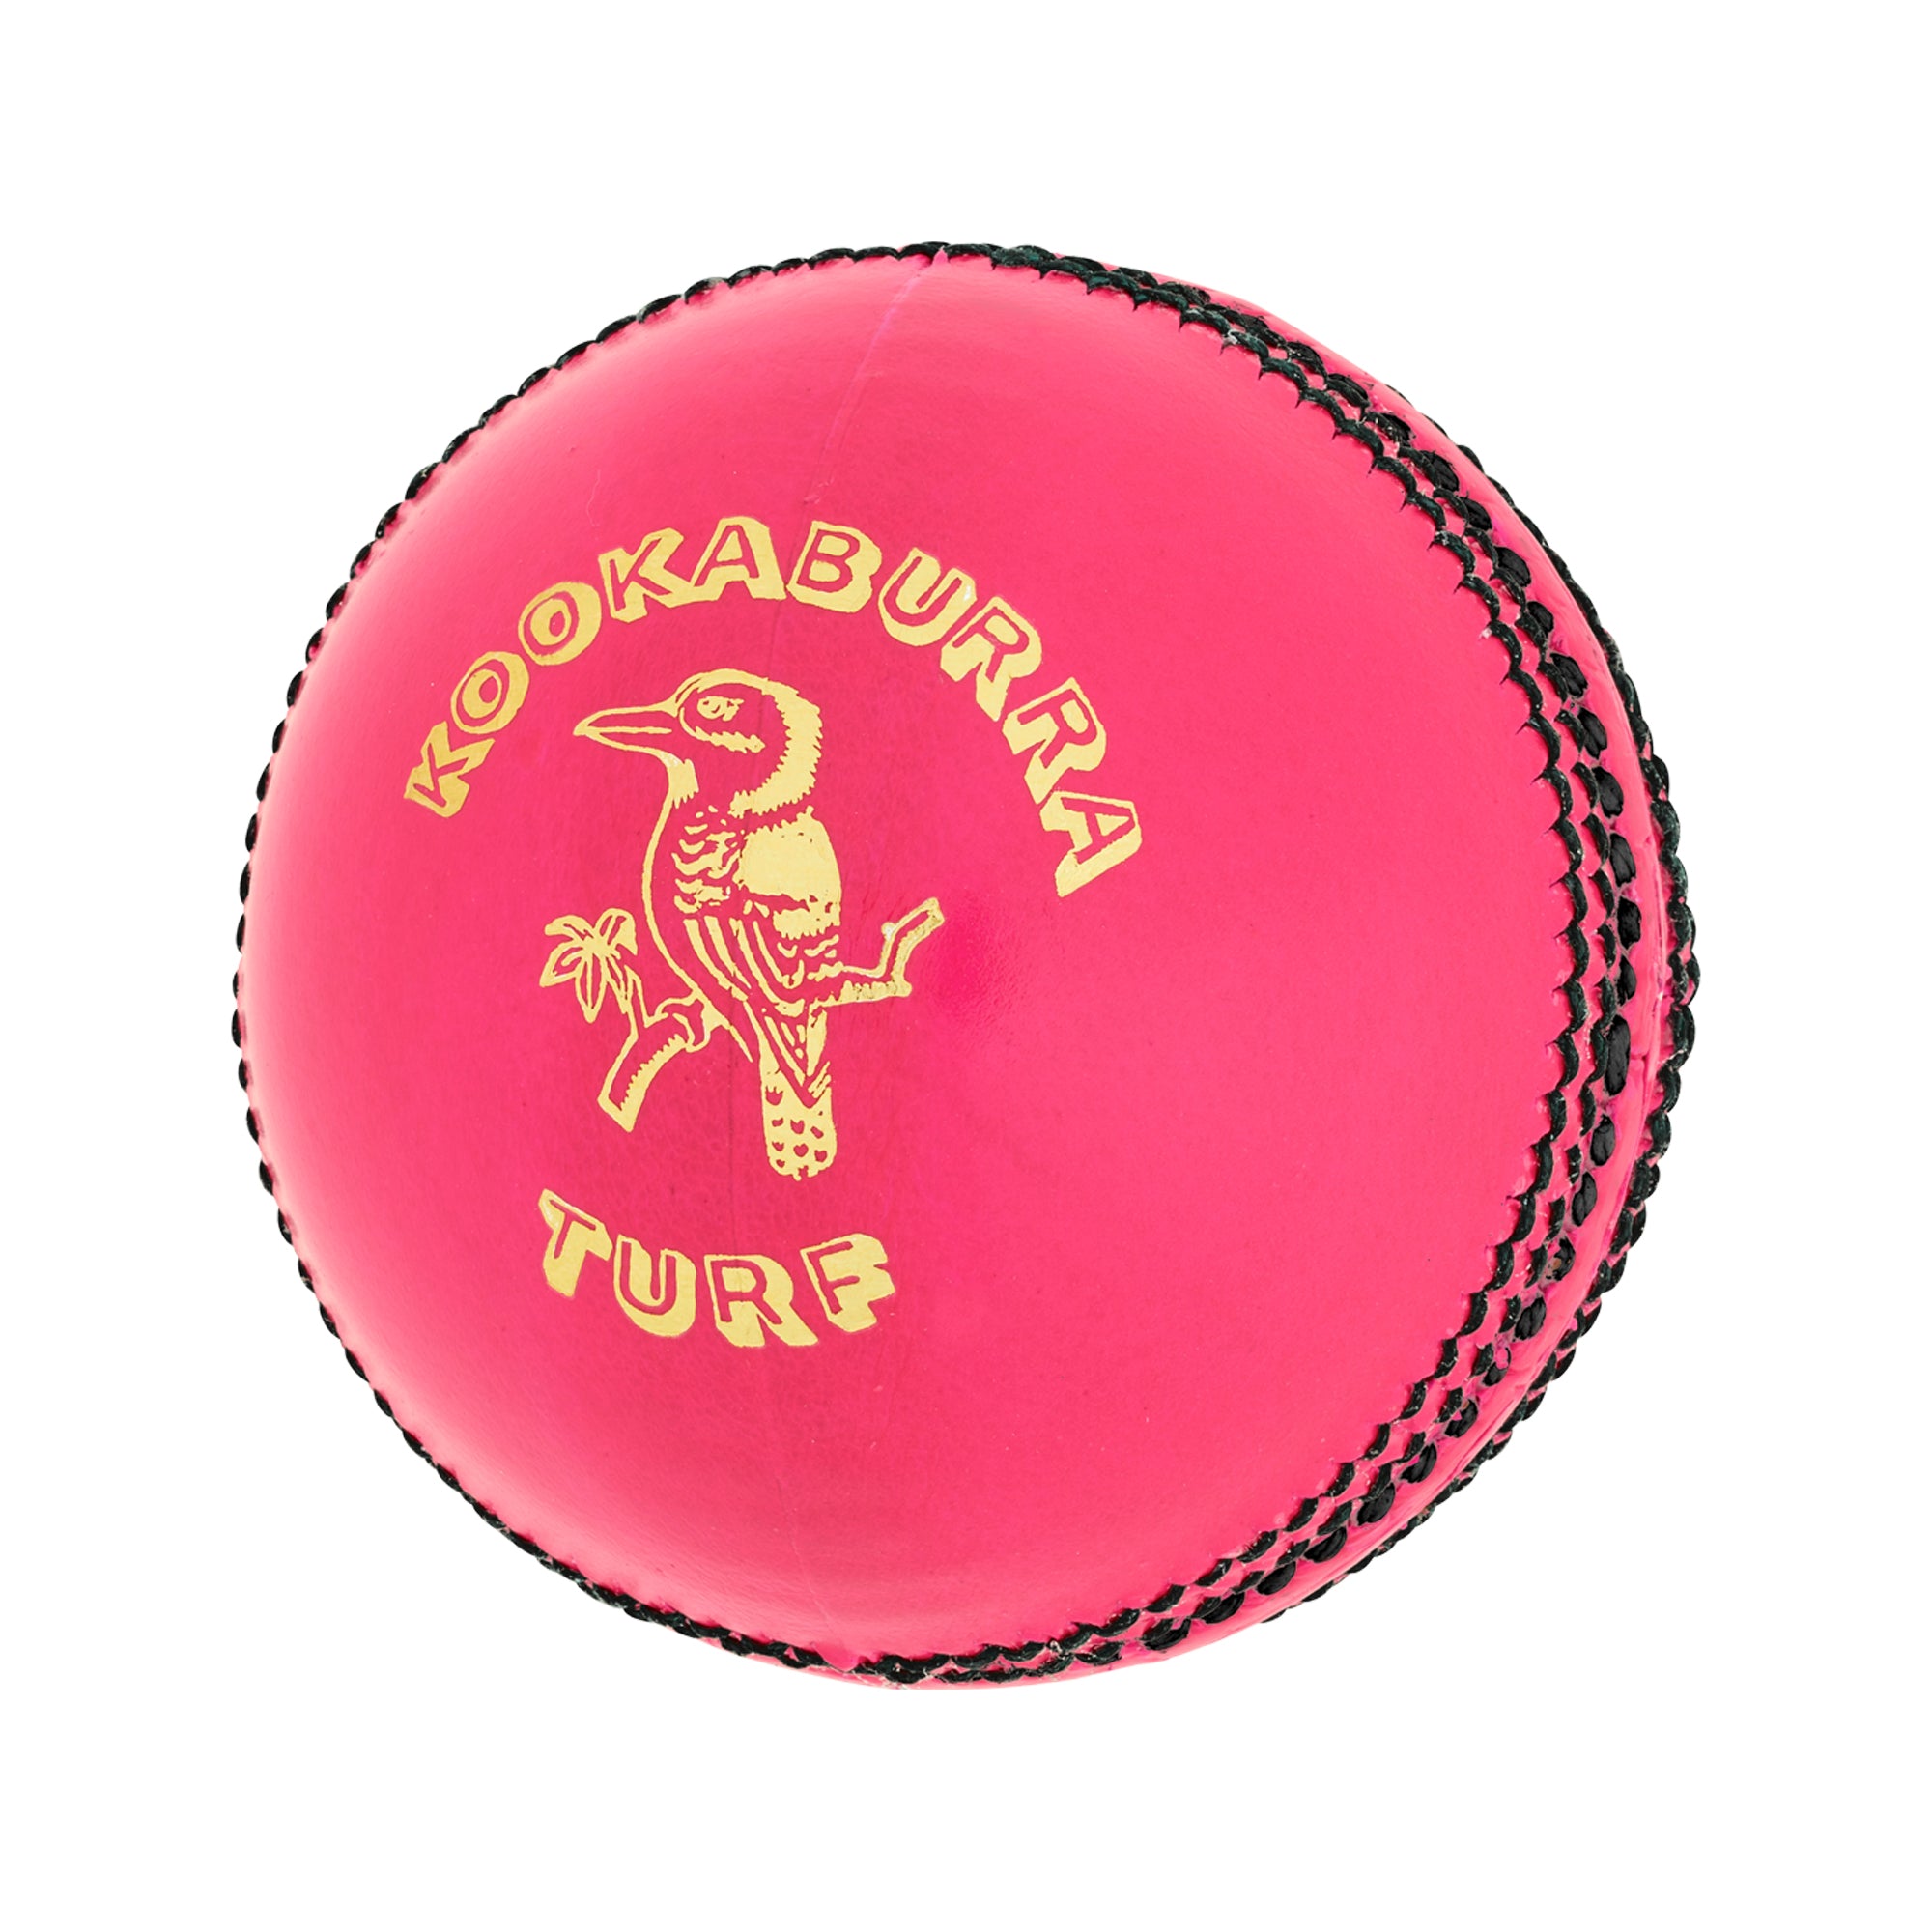 Kookaburra Turf 4 Piece Cricket Ball Pink